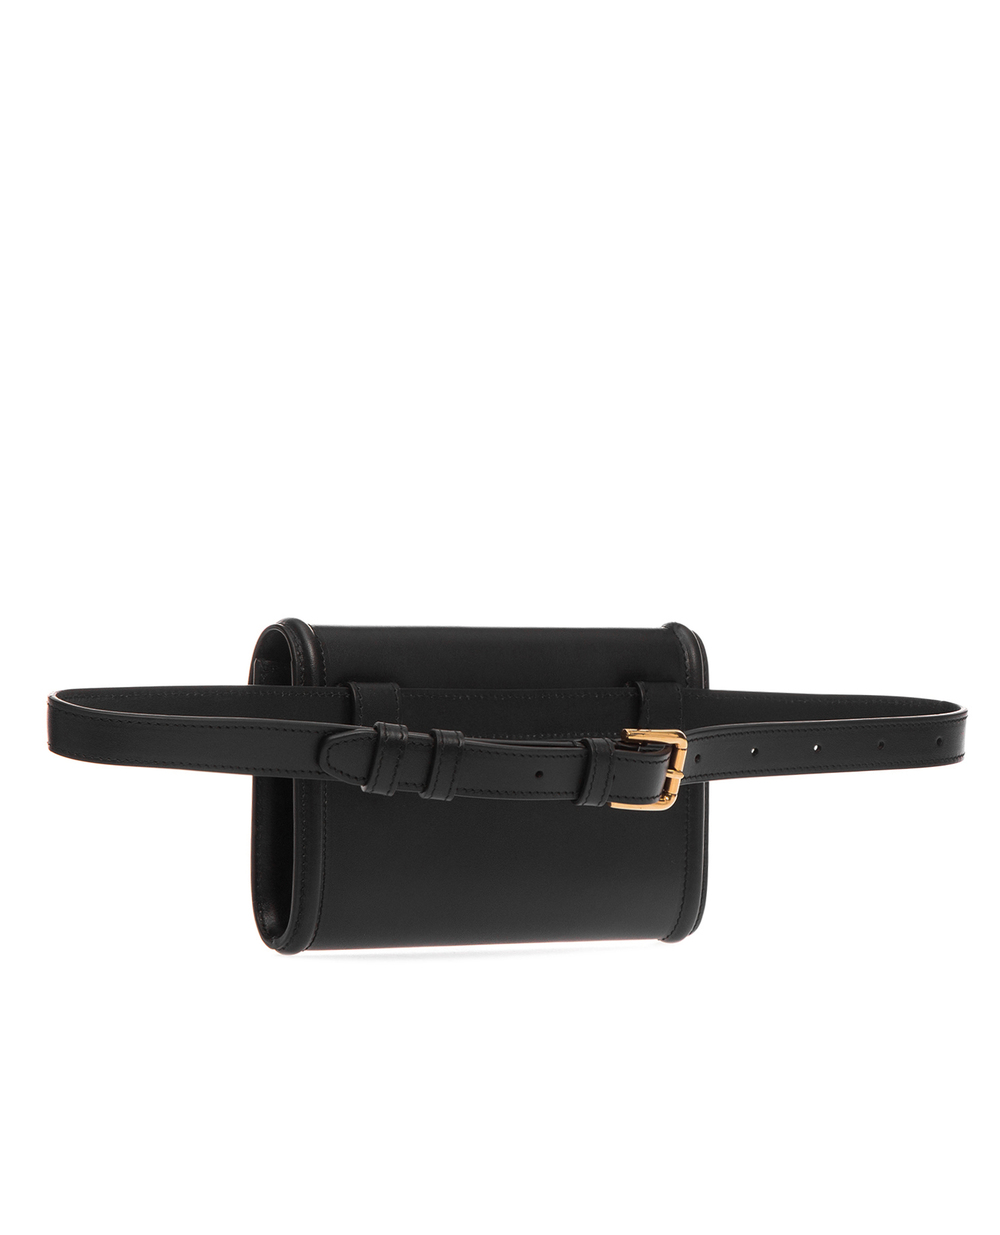 Кожаная поясная сумка Devotion Dolce&Gabbana BB6706-AV893, черный цвет • Купить в интернет-магазине Kameron